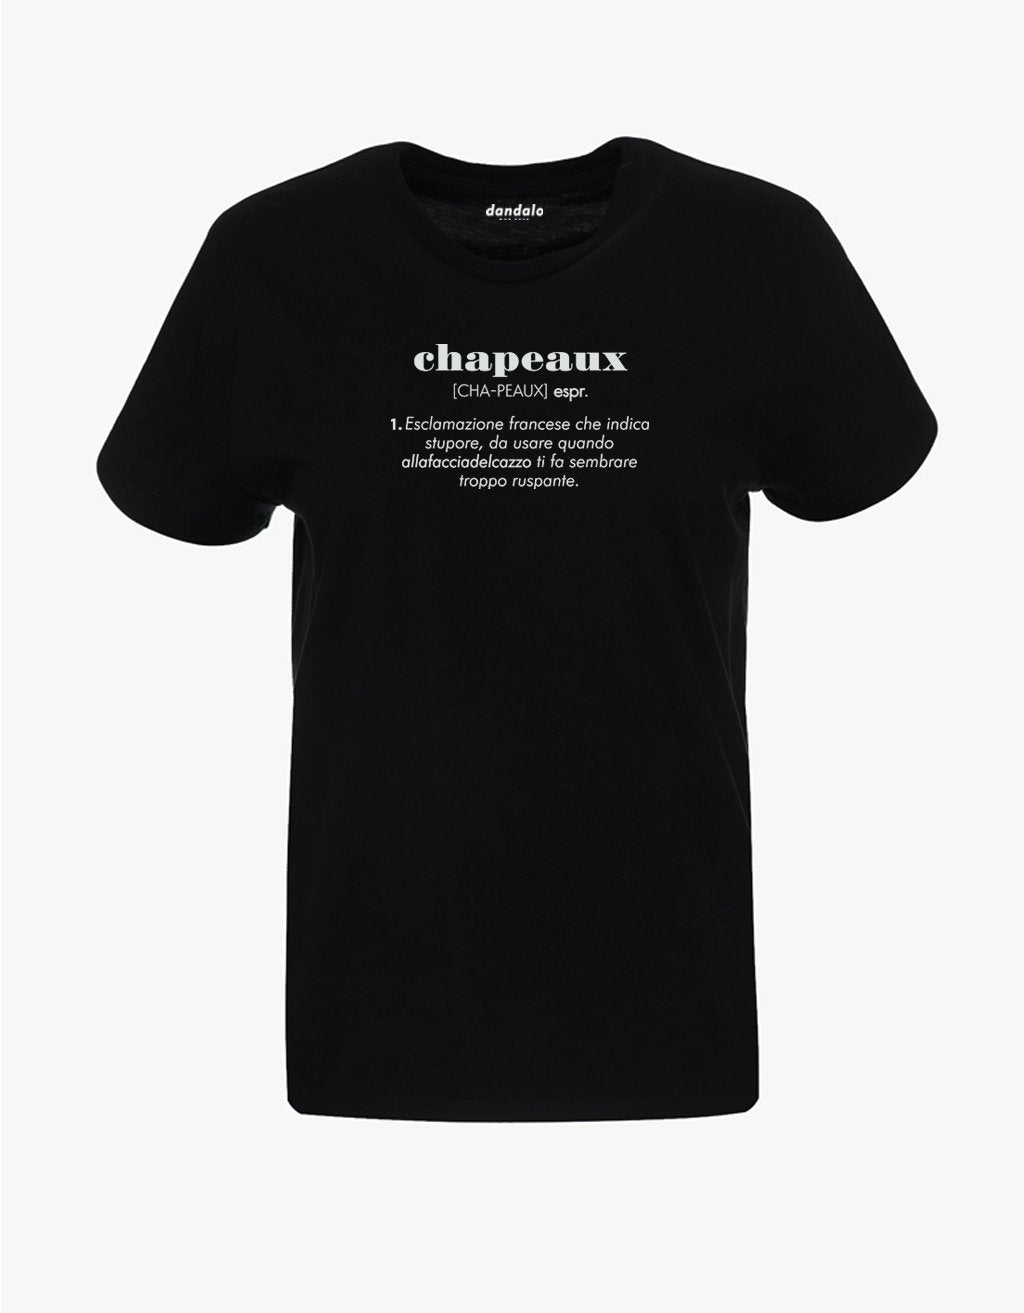 T-Shirt Donna "Chapeaux" - dandalo